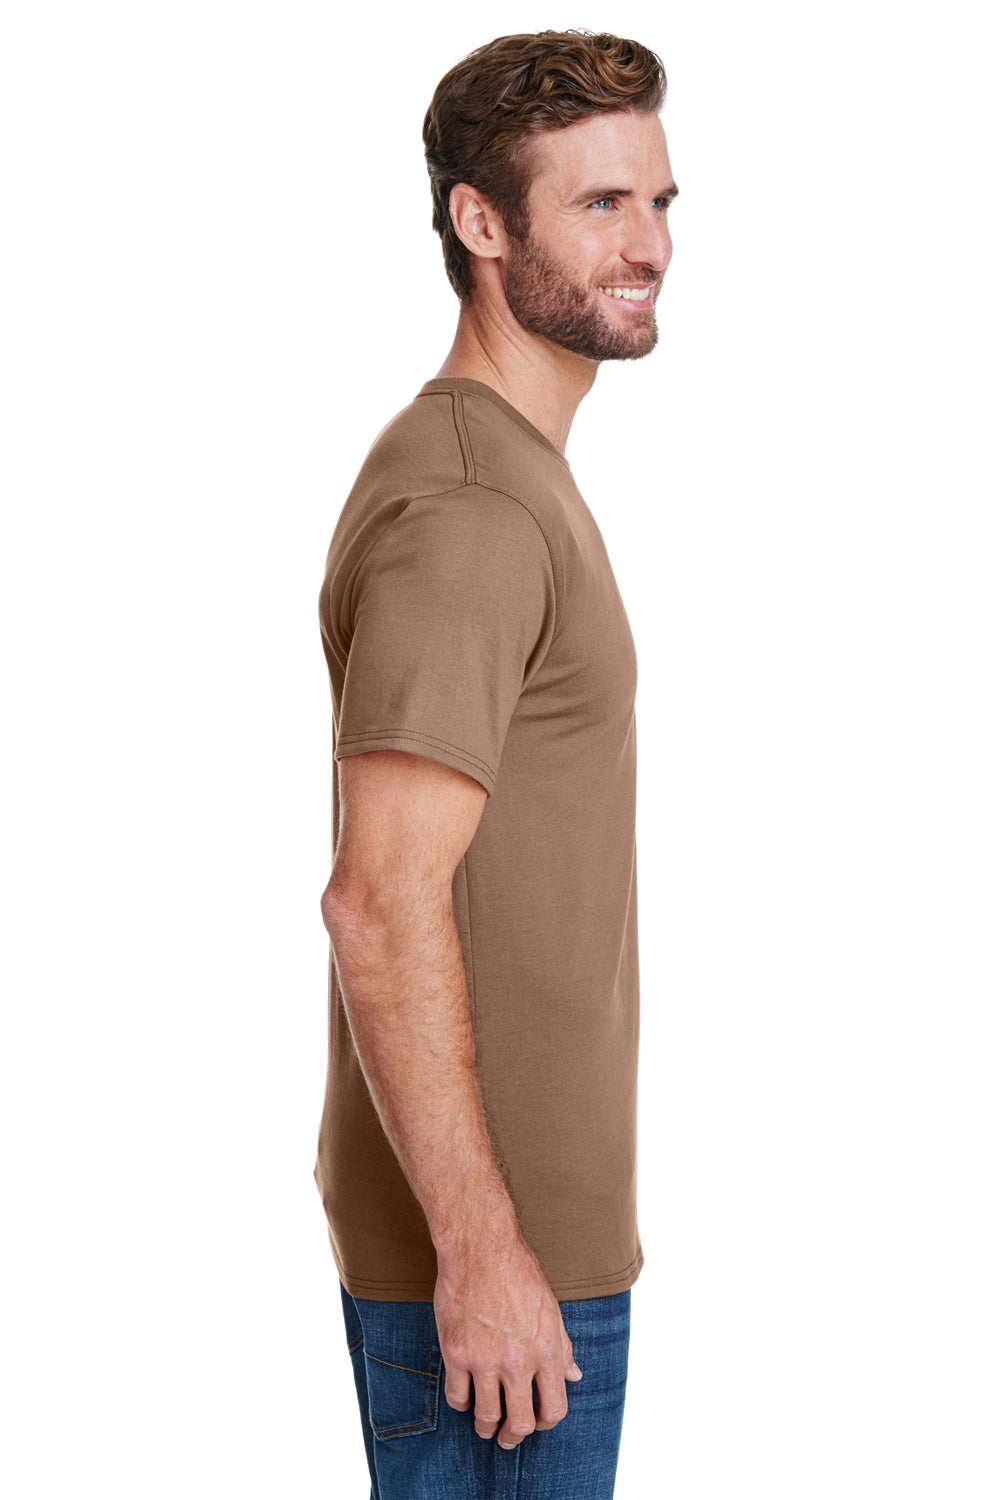 Hanes W110 Mens Workwear Short Sleeve Crewneck T-Shirt w/ Pocket Army Brown Side